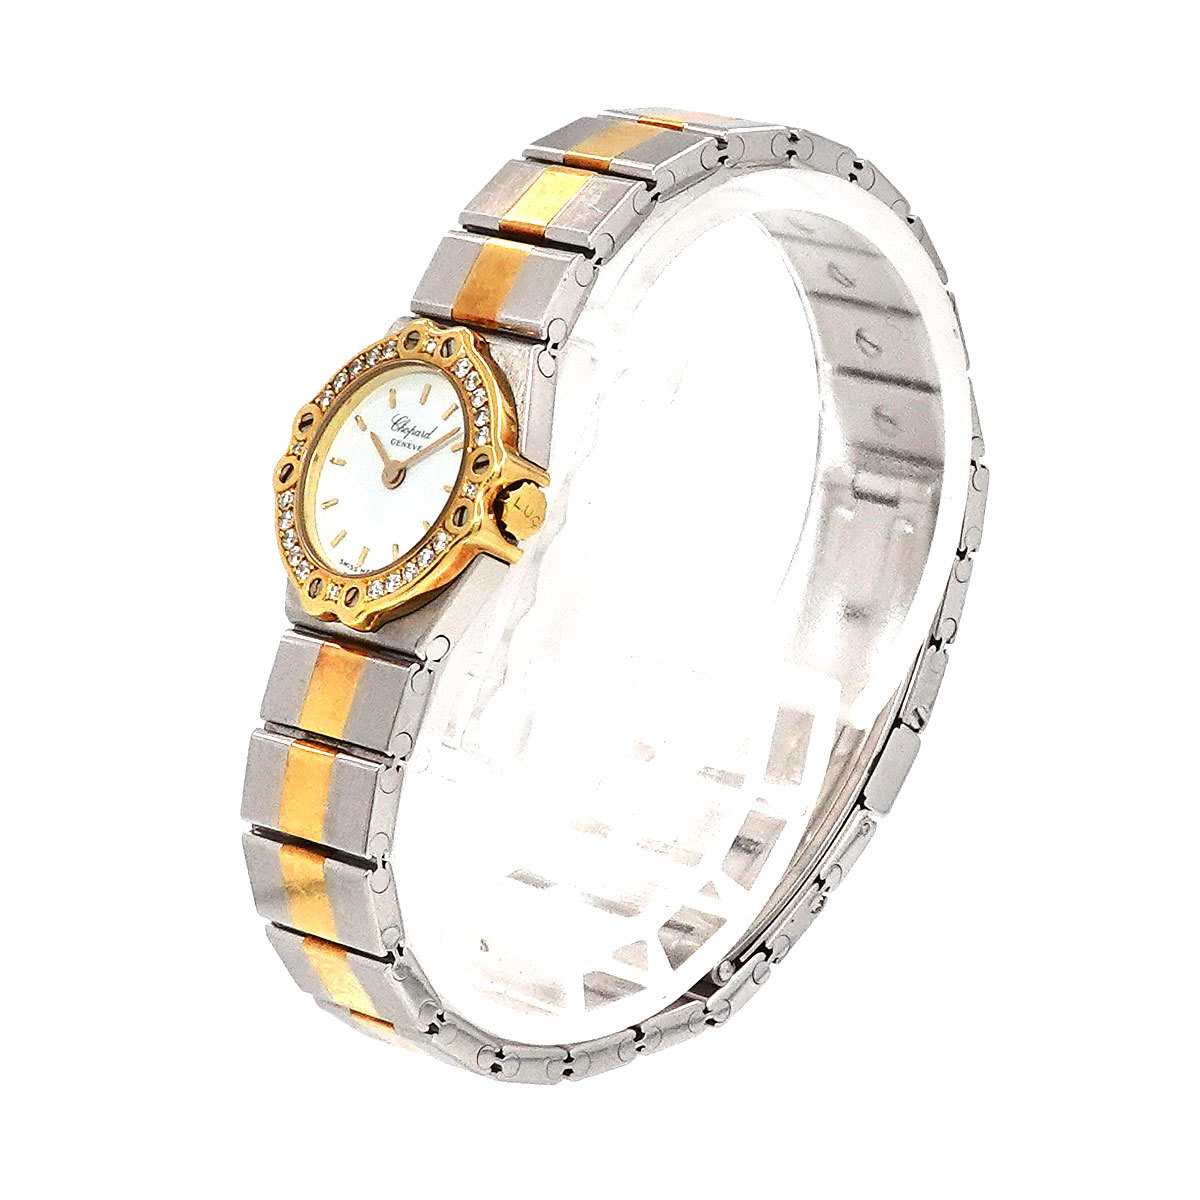  Chopard Chopard солнечный molitsu комбинированный 8067/11 бриллиантовая оправа женские наручные часы белый циферблат YG кварц St. Moritz 90222936